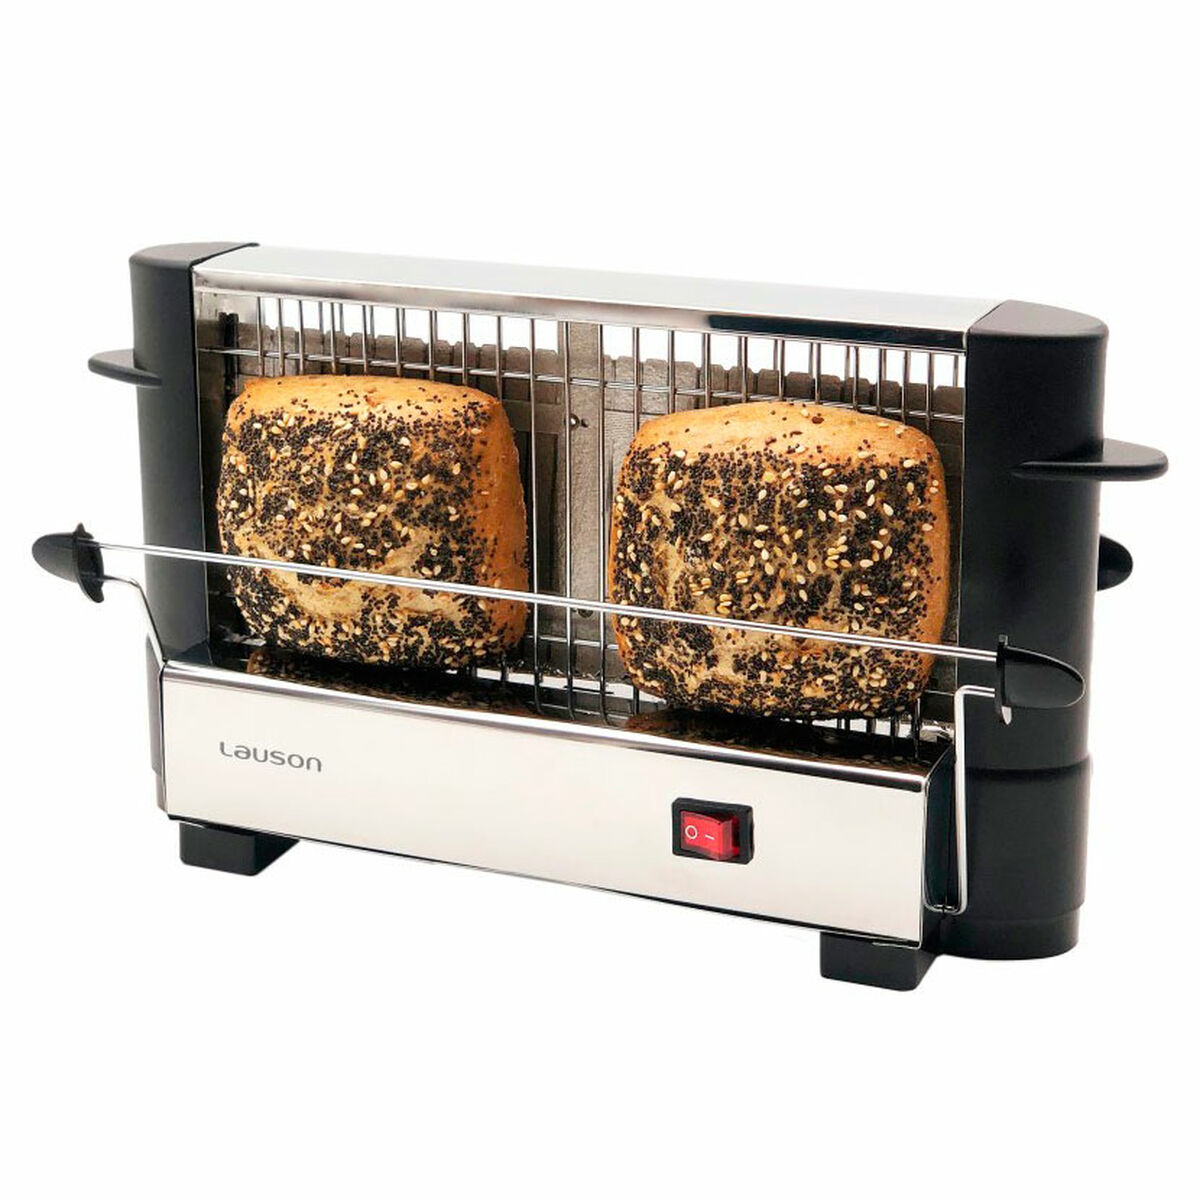 Lauson Toaster ATT 114 Edelstahl 750 W